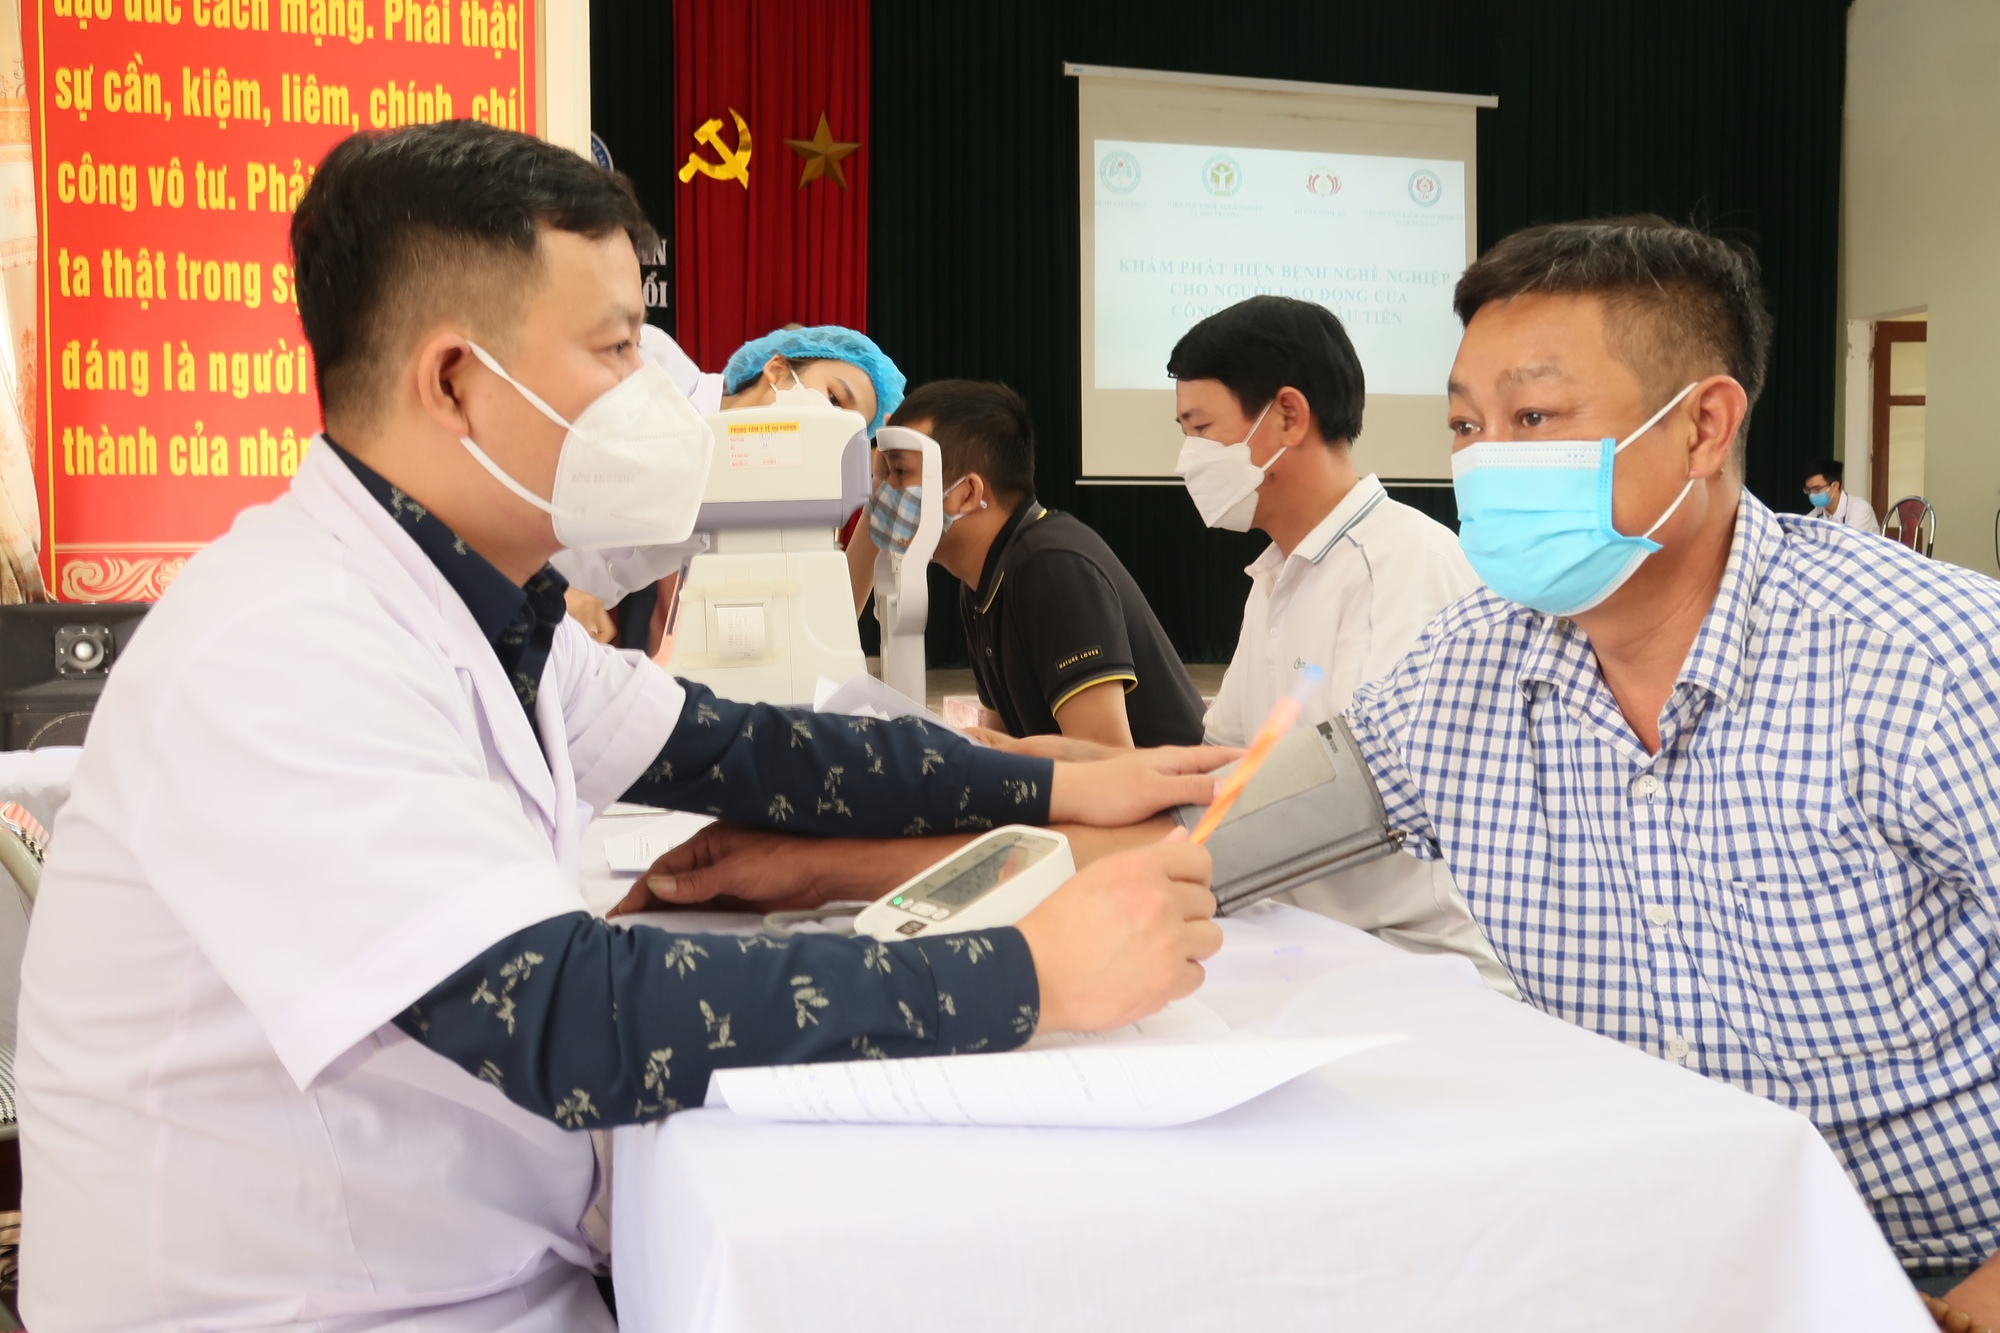 Đoàn y tế kiểm tra bệnh nghề nghiệp cho công nhân Công ty Châu Tiến